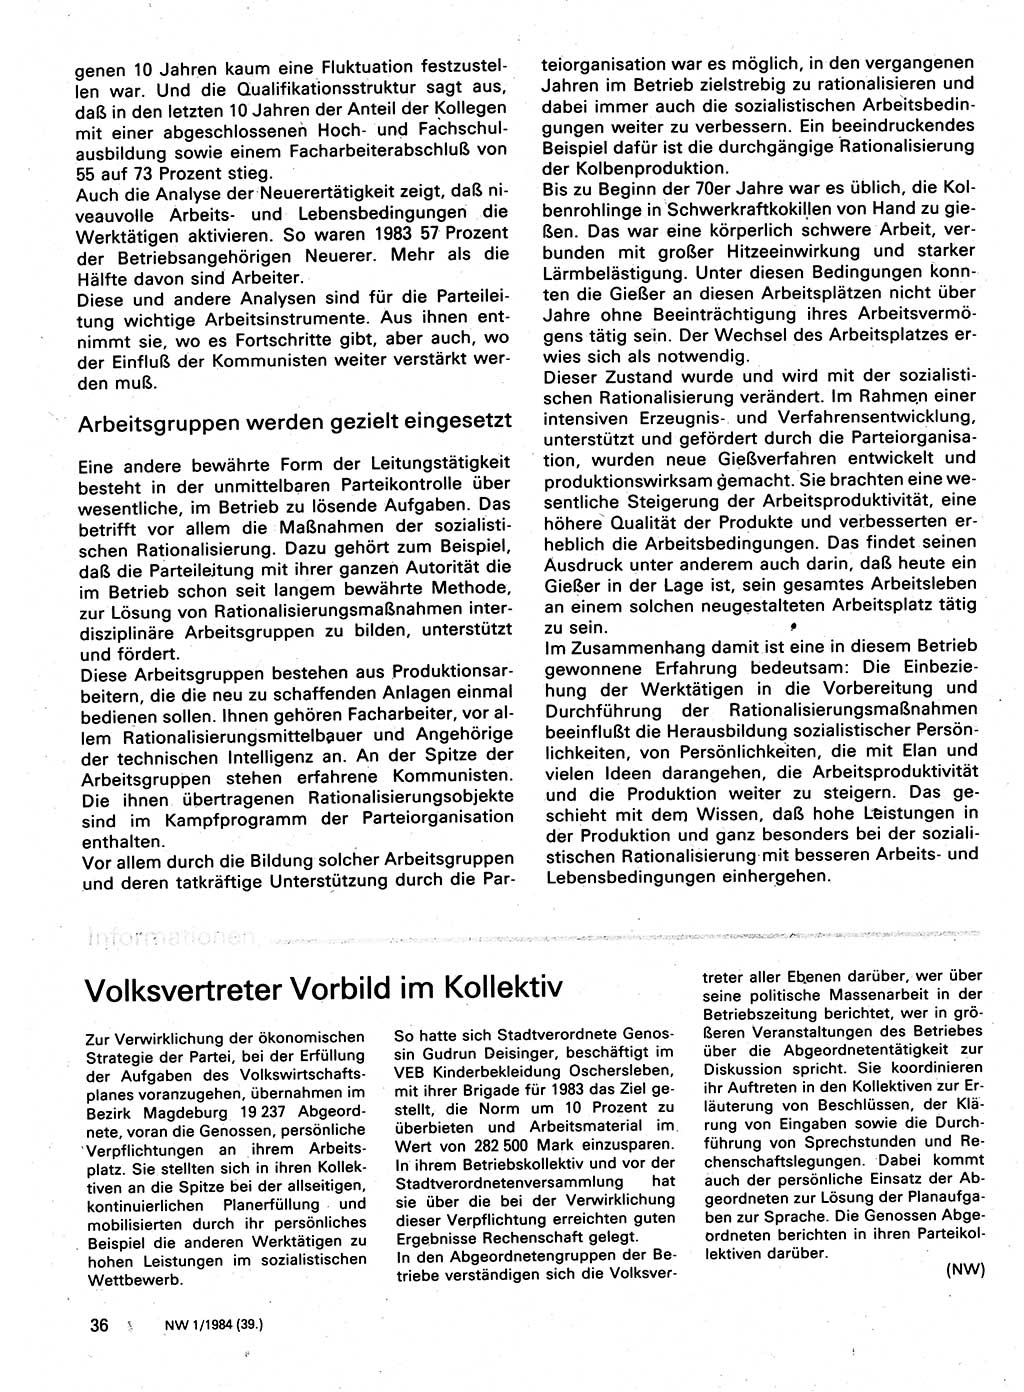 Neuer Weg (NW), Organ des Zentralkomitees (ZK) der SED (Sozialistische Einheitspartei Deutschlands) für Fragen des Parteilebens, 39. Jahrgang [Deutsche Demokratische Republik (DDR)] 1984, Seite 36 (NW ZK SED DDR 1984, S. 36)